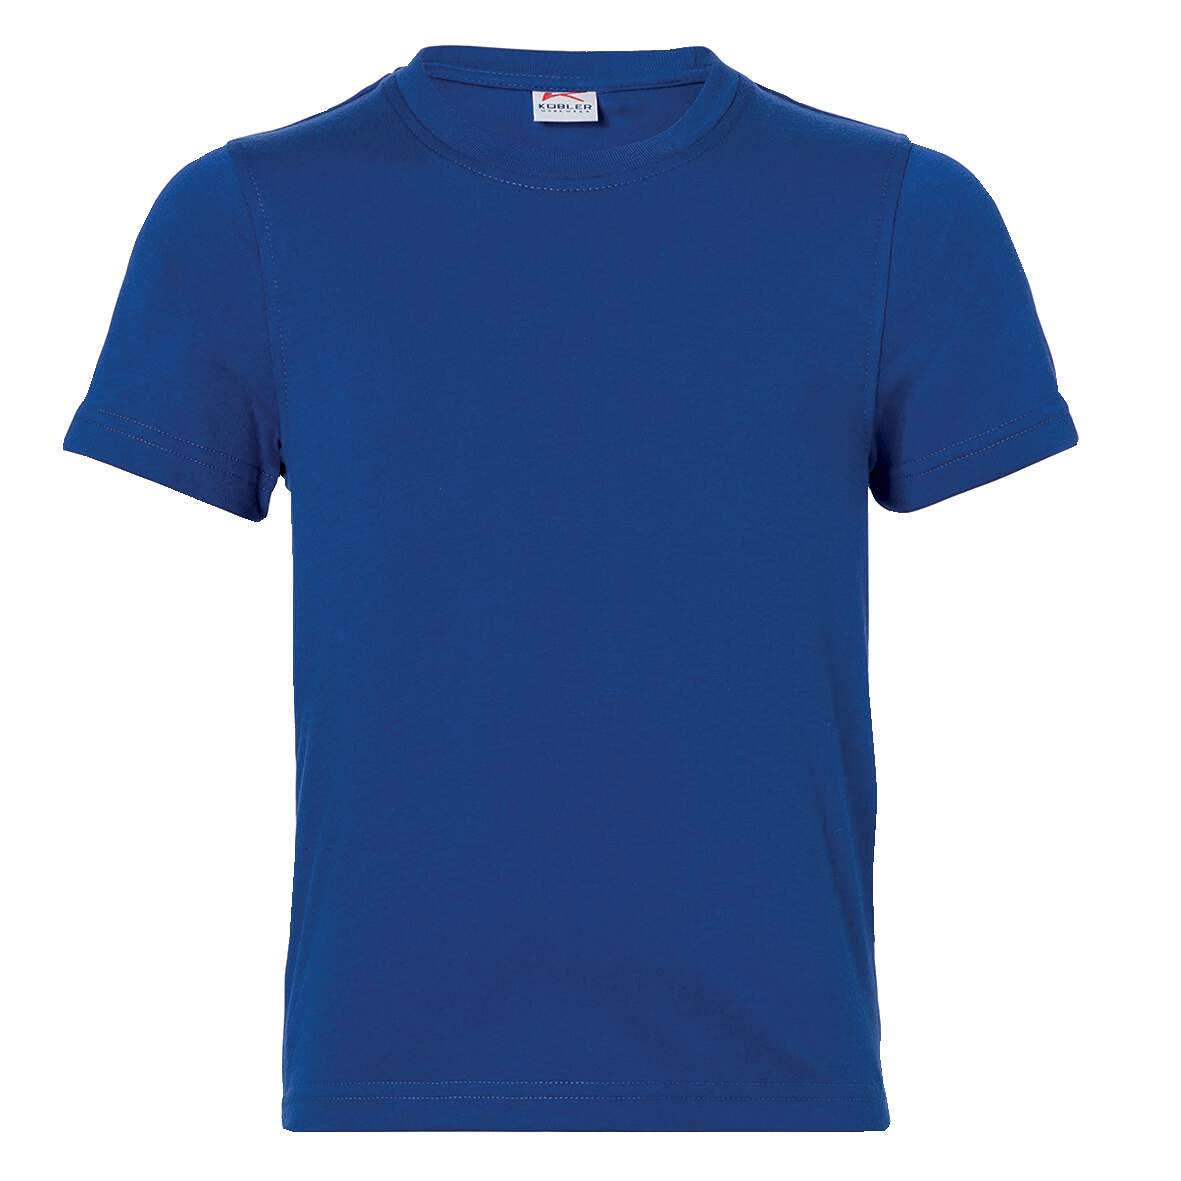 1253972 - T-Shirt Jungen Gr.140 kbl.blau